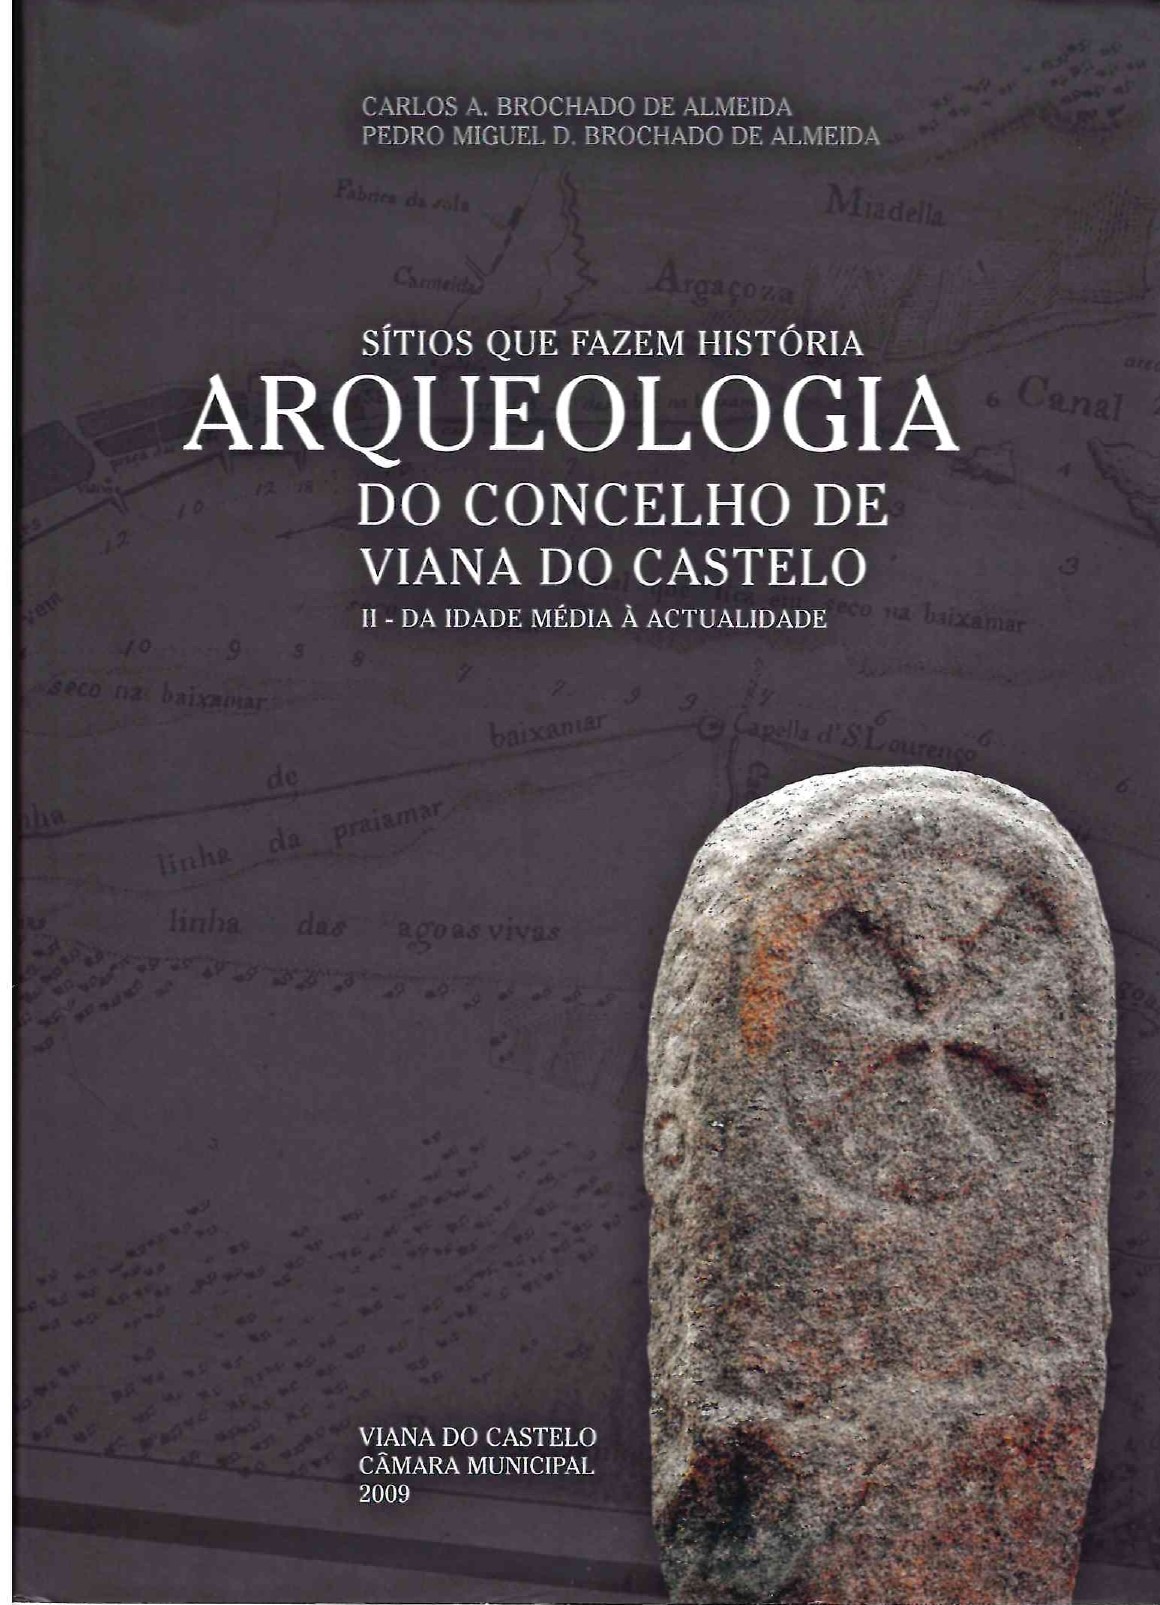 Arqueologia do concelho de Viana do Castelo. Sítios que fazem história. II – da idade média à atualidade